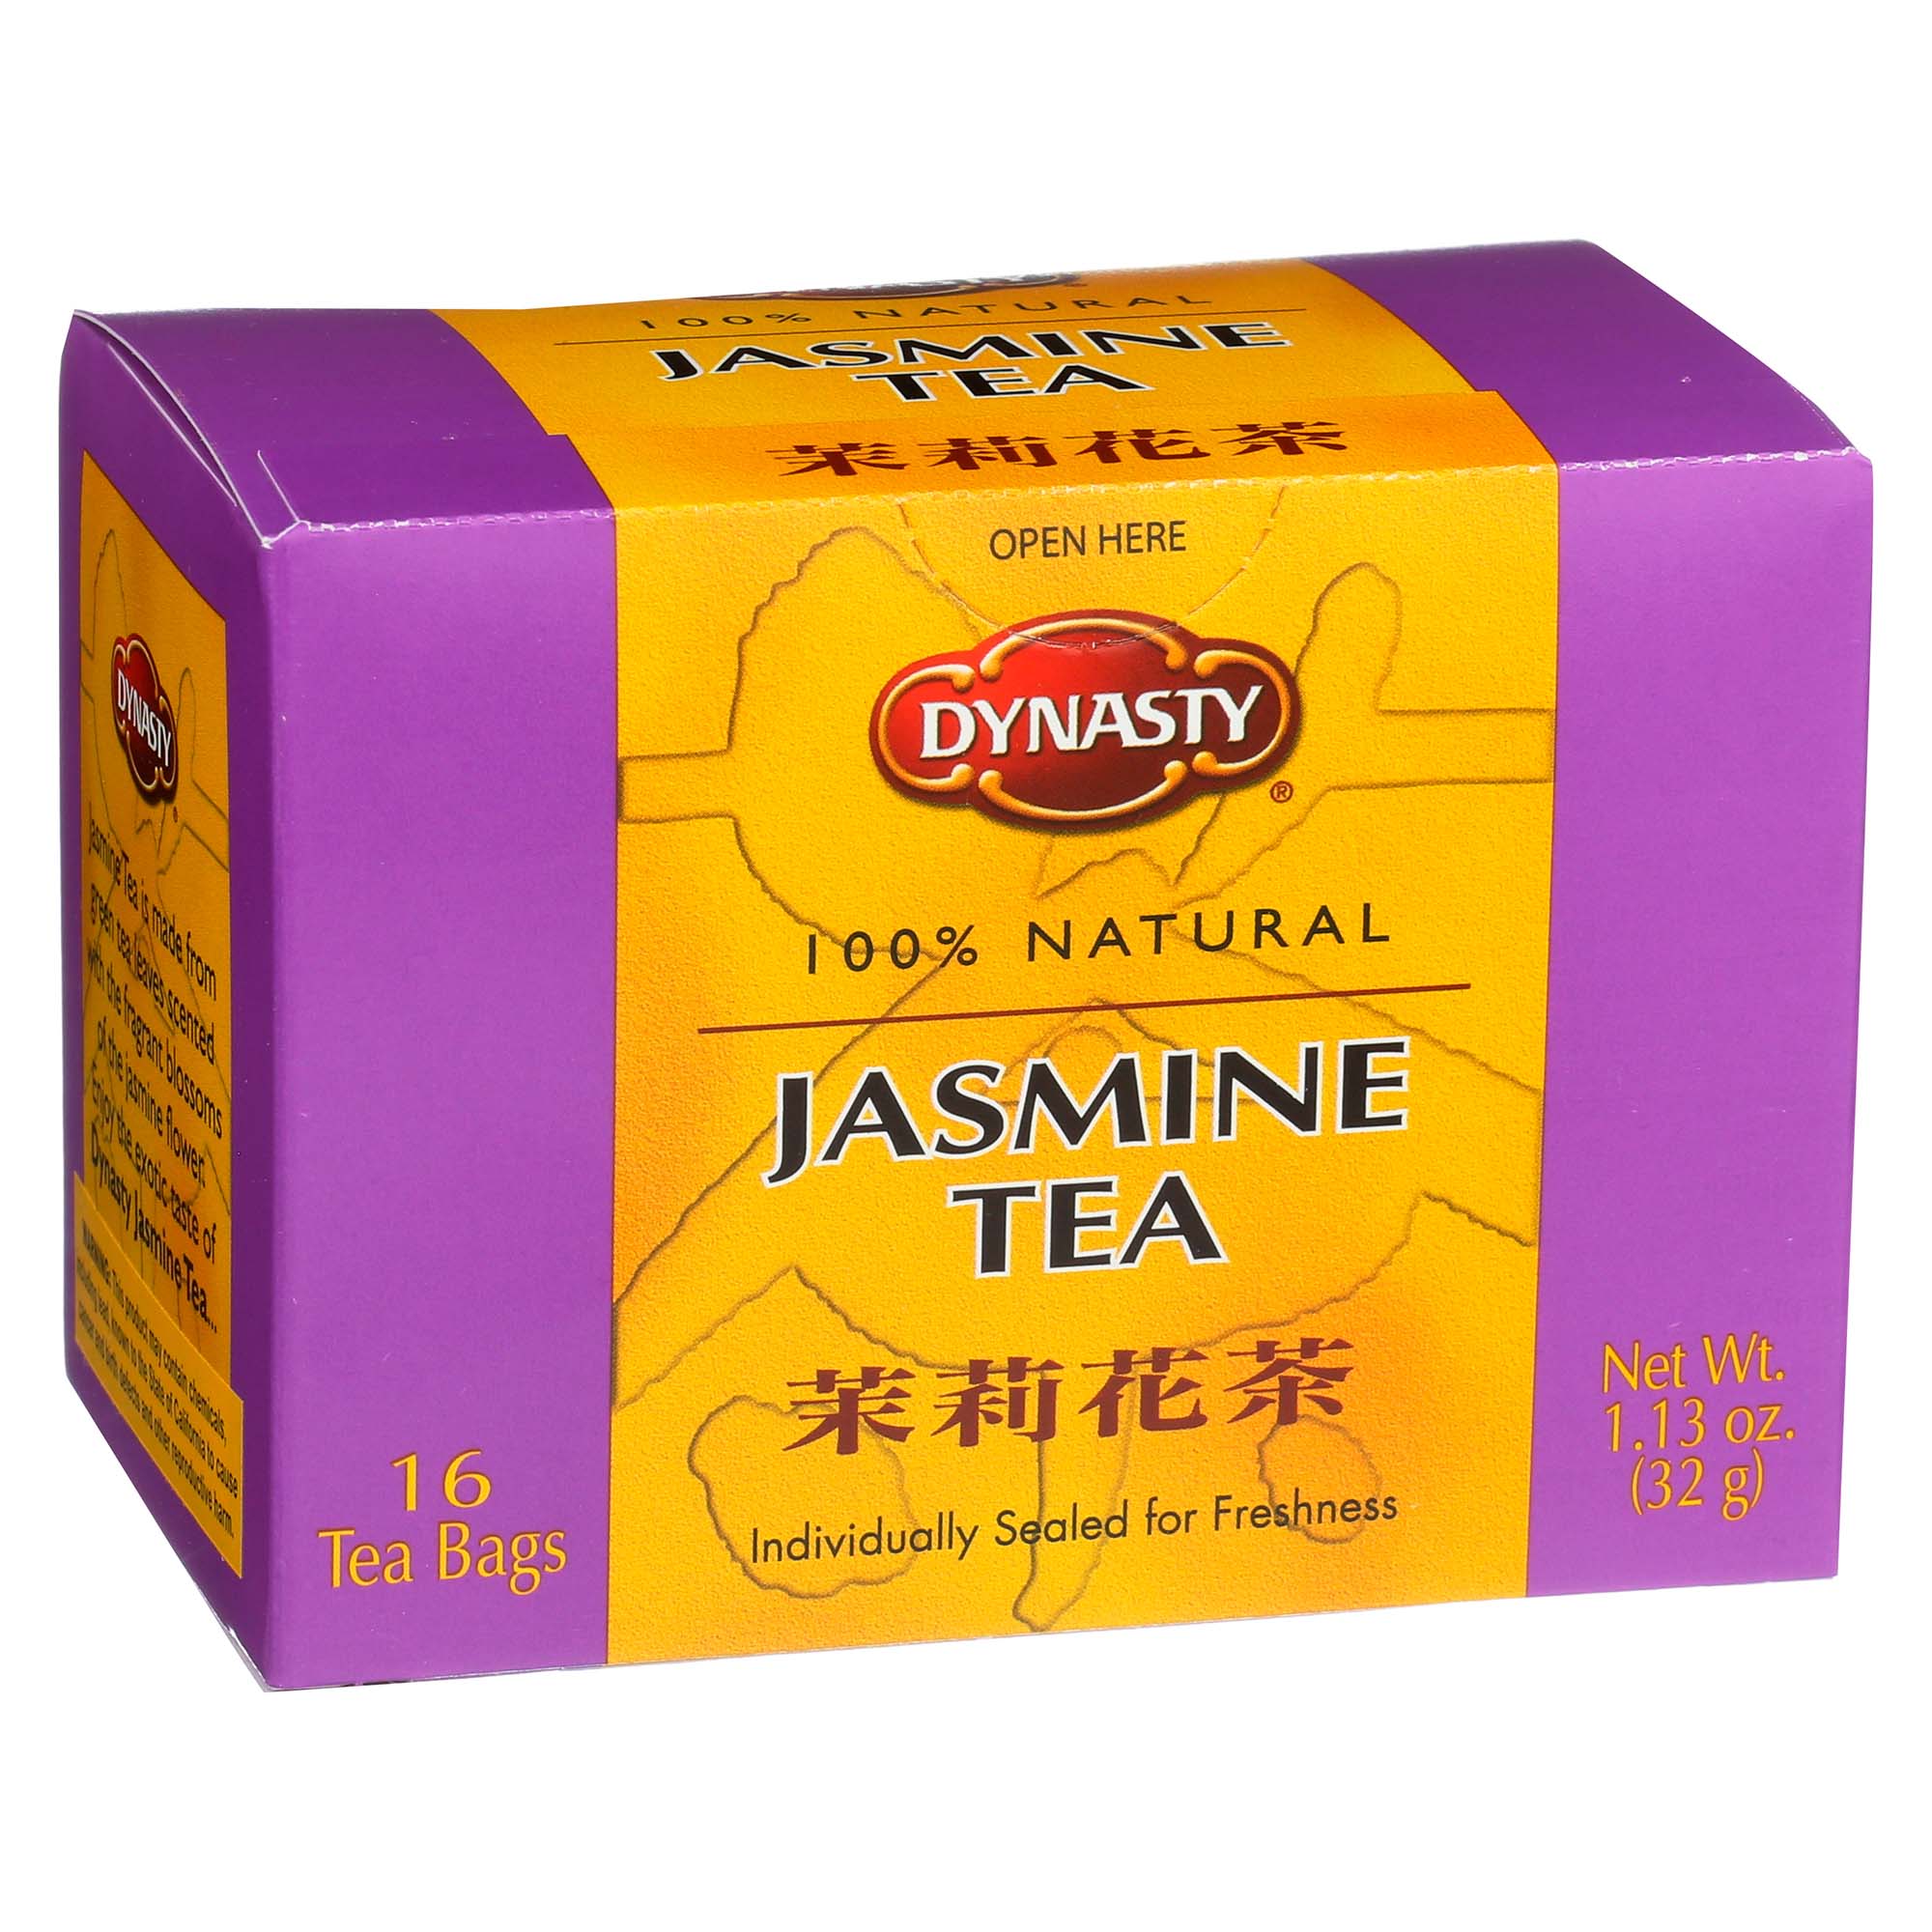 DYNASTY JASMINE TEA TEABAG           6/16 BAG